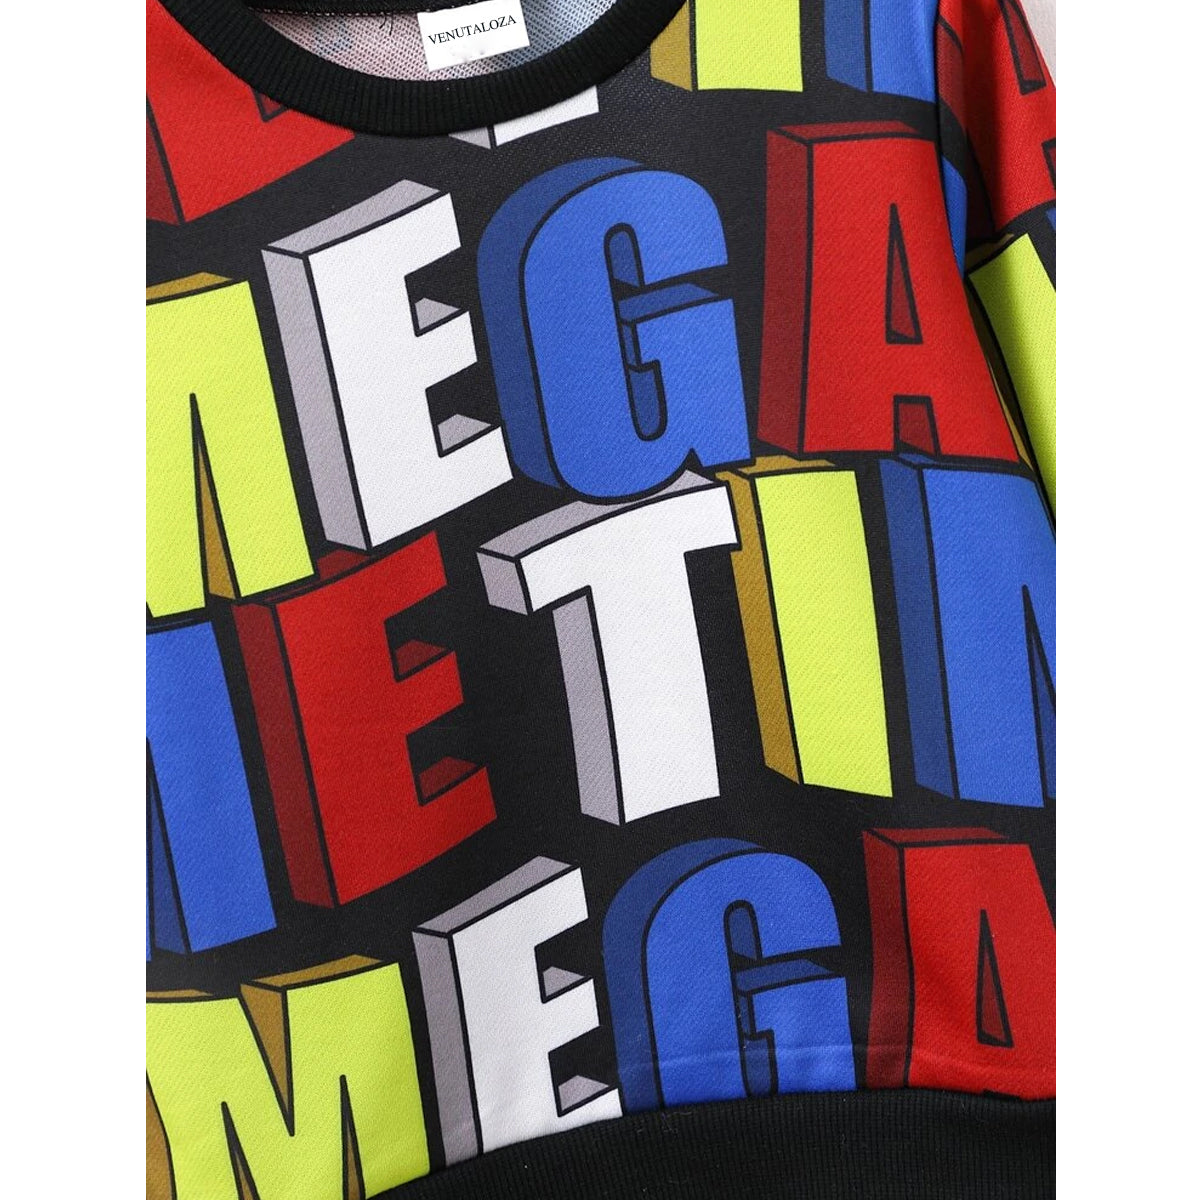 Venutaloza Letters Stripe Full Sleeve Round Nick Tee T-Shirt For Boy's & Girl's.